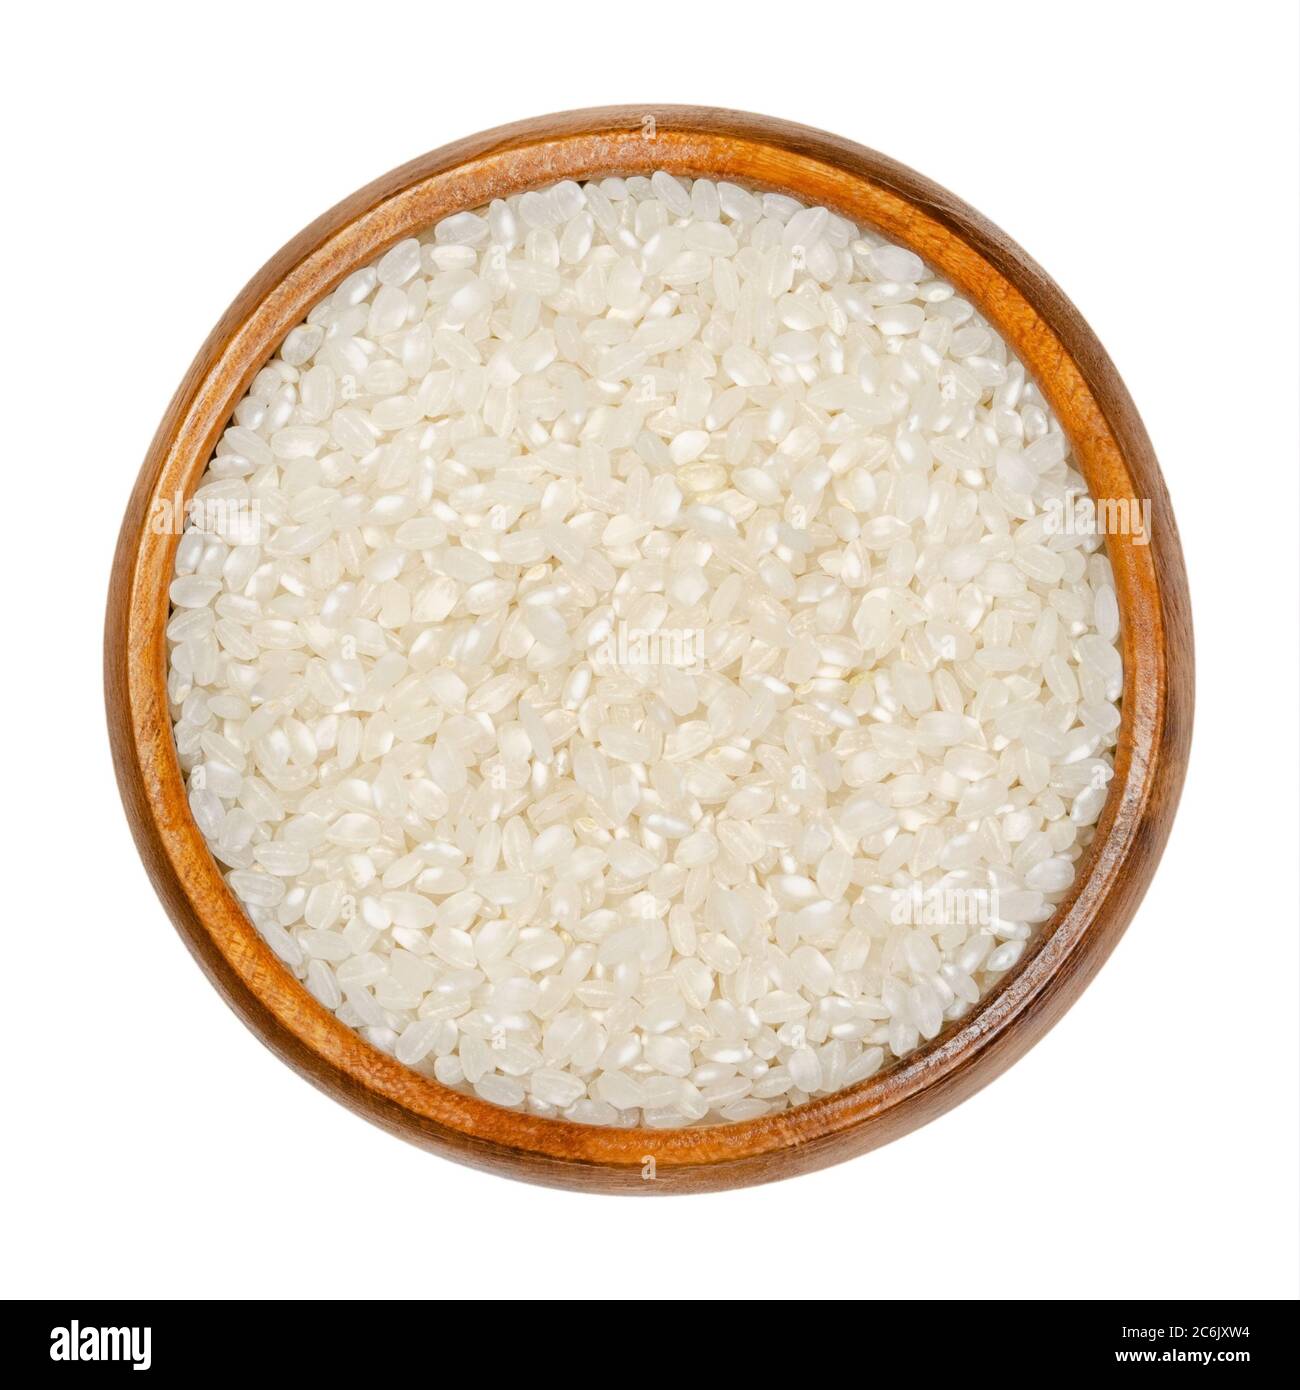 Riz blanc à grain court dans un bol en bois. Graines de l'herbe Oryza sativa, également connu sous le nom de riz asiatique. Céréales et aliments de base. Banque D'Images